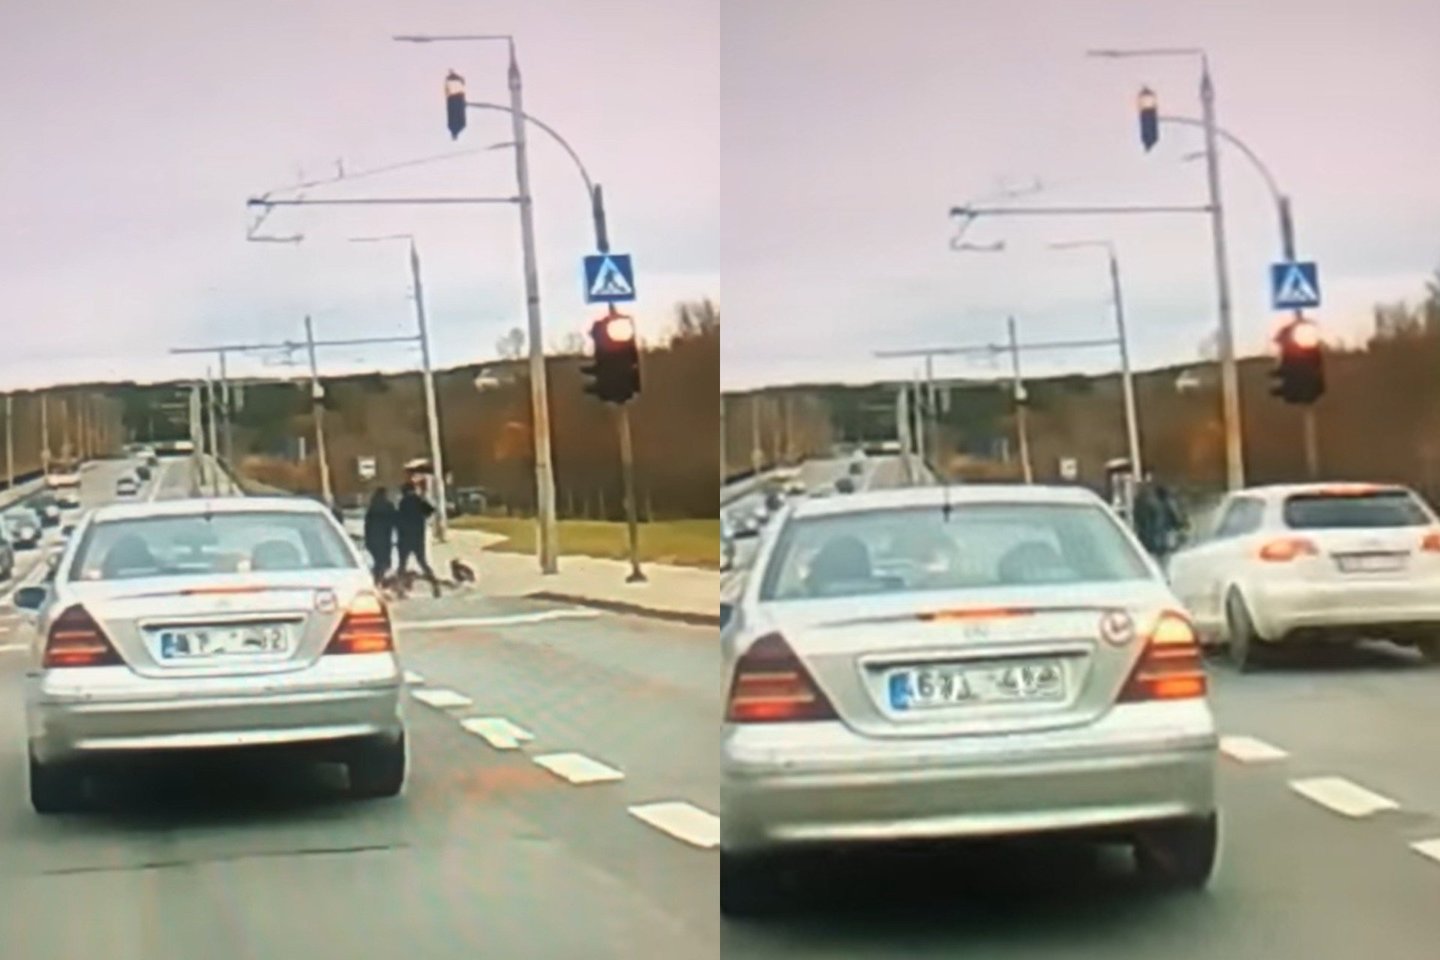 Vairuotojas pralekia per raudoną šviesoforo signalą ir vos nenutrenkia per perėją einančių dviejų žmonių ir šuniukų.<br>lrytas.lt fotomontažas